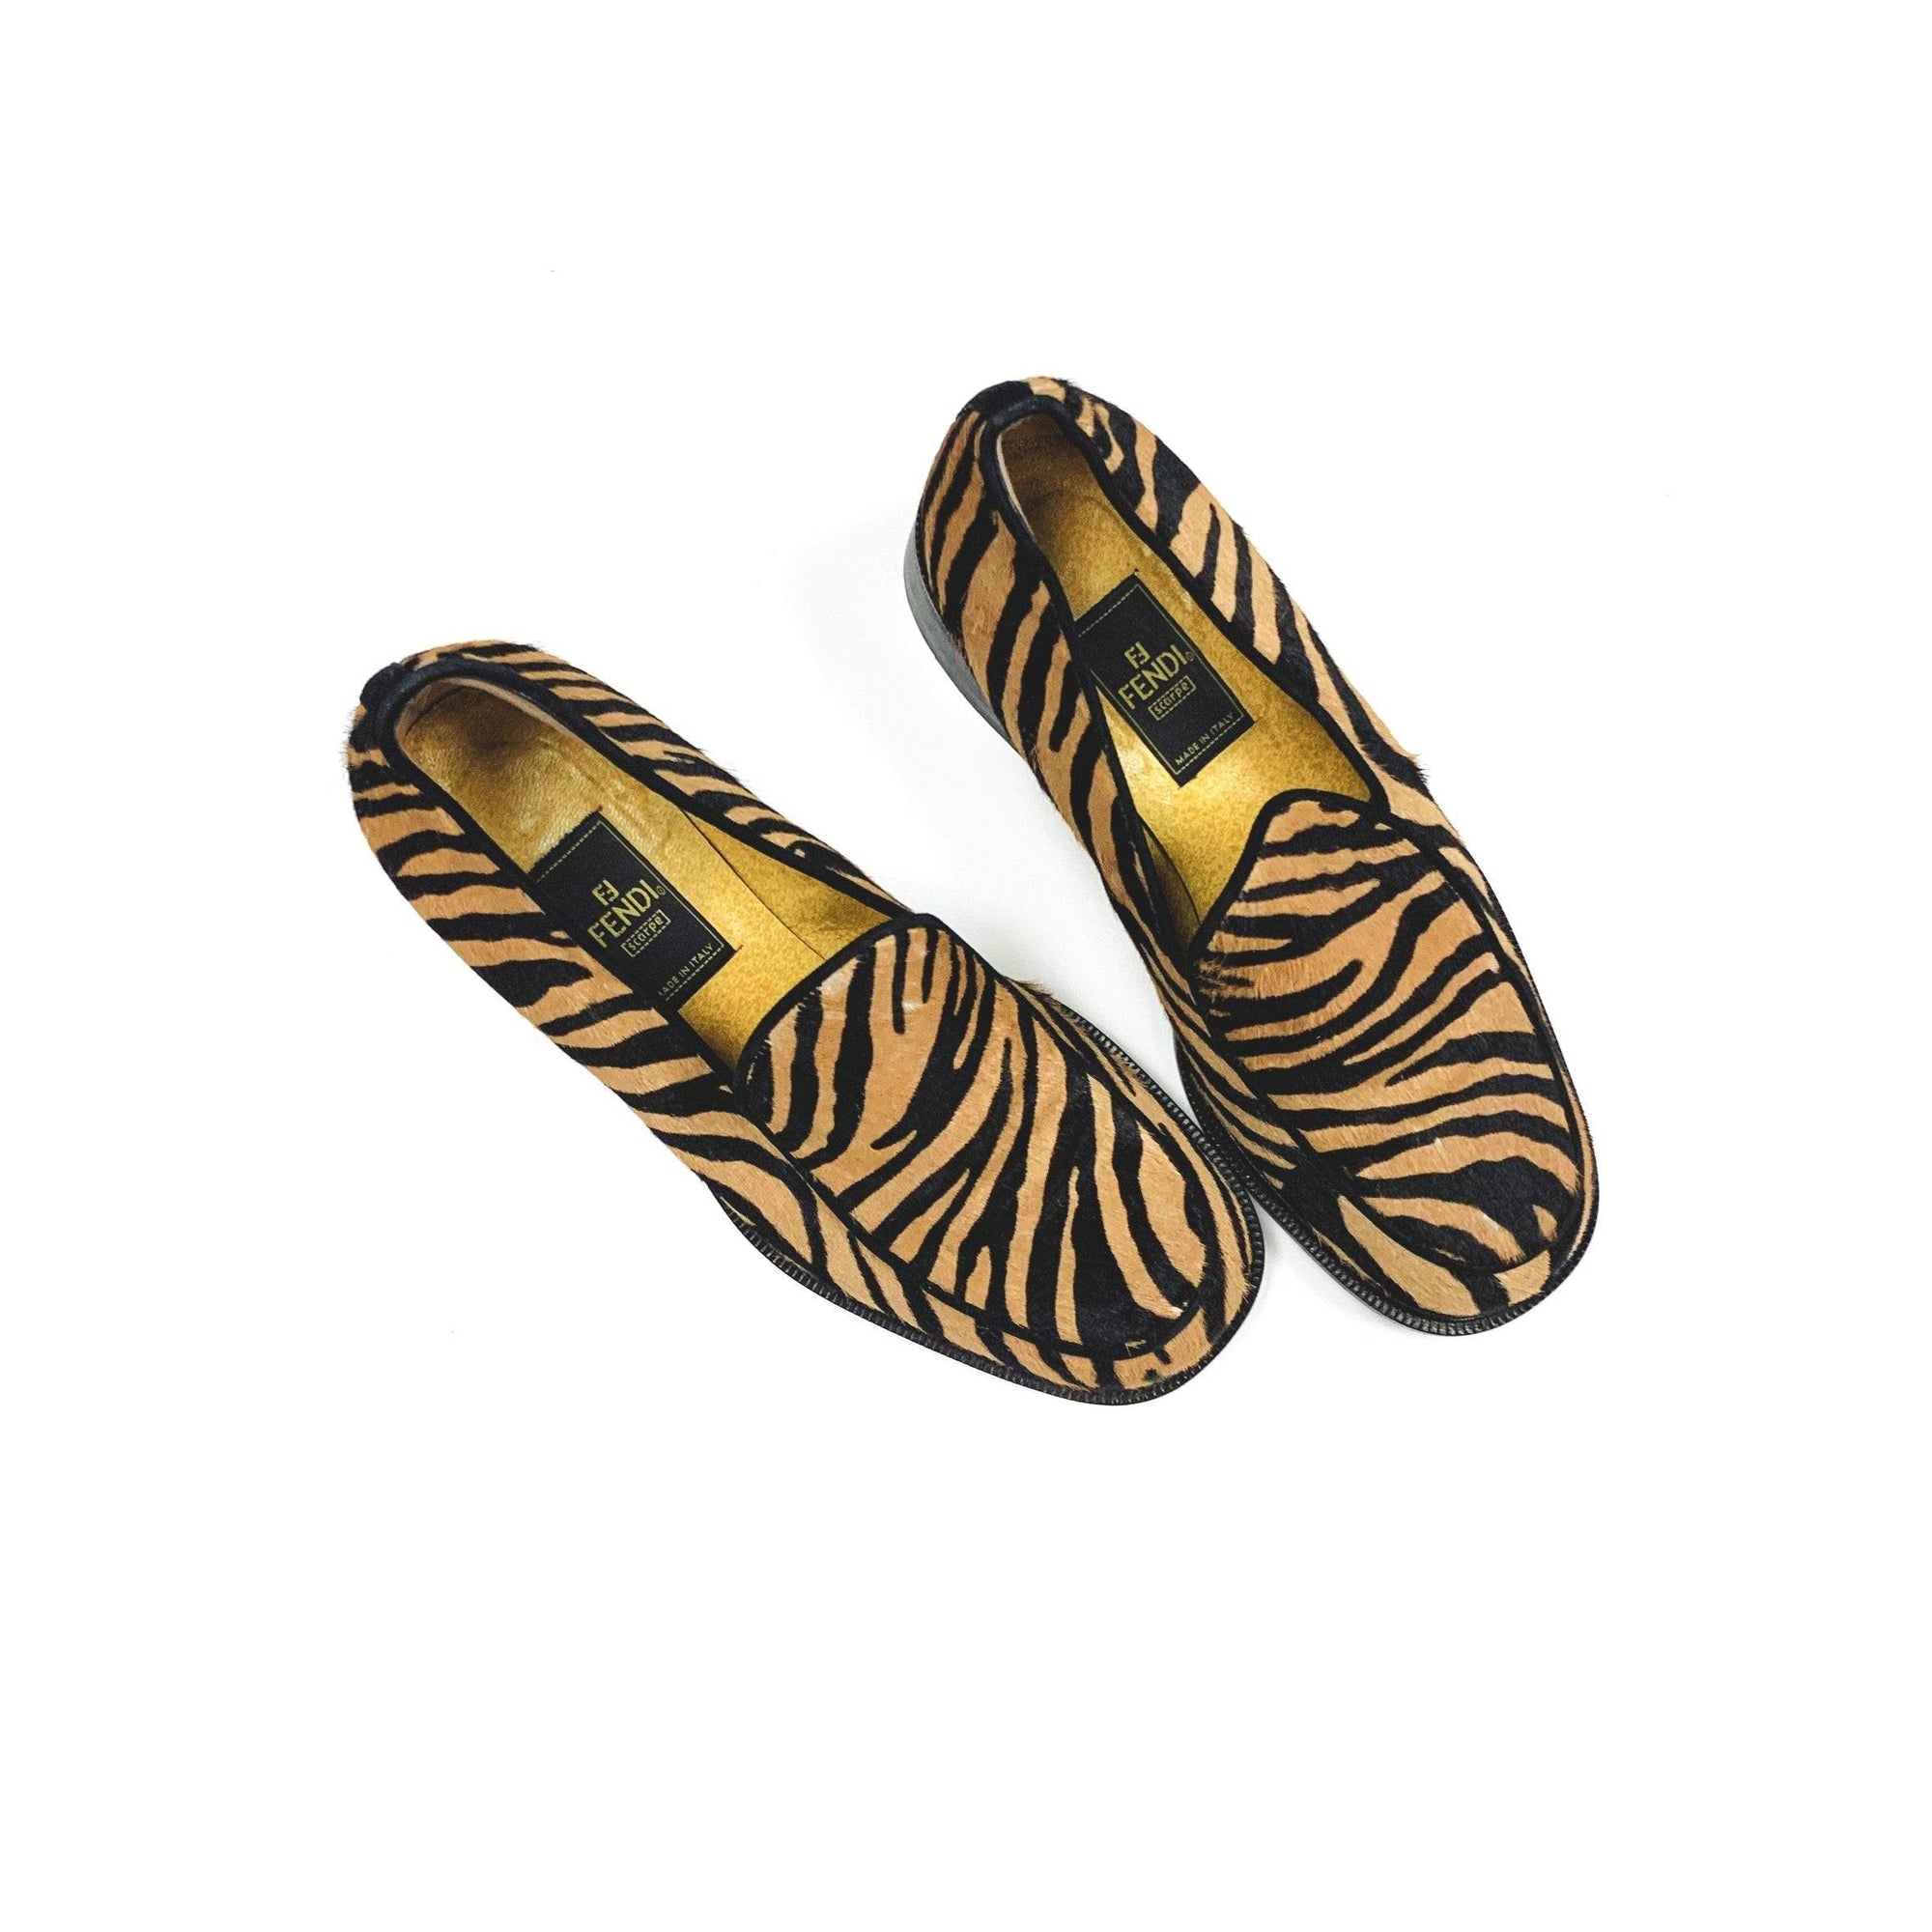 Fendi Zebra Calf Hair Heeled Loafers - Shoes